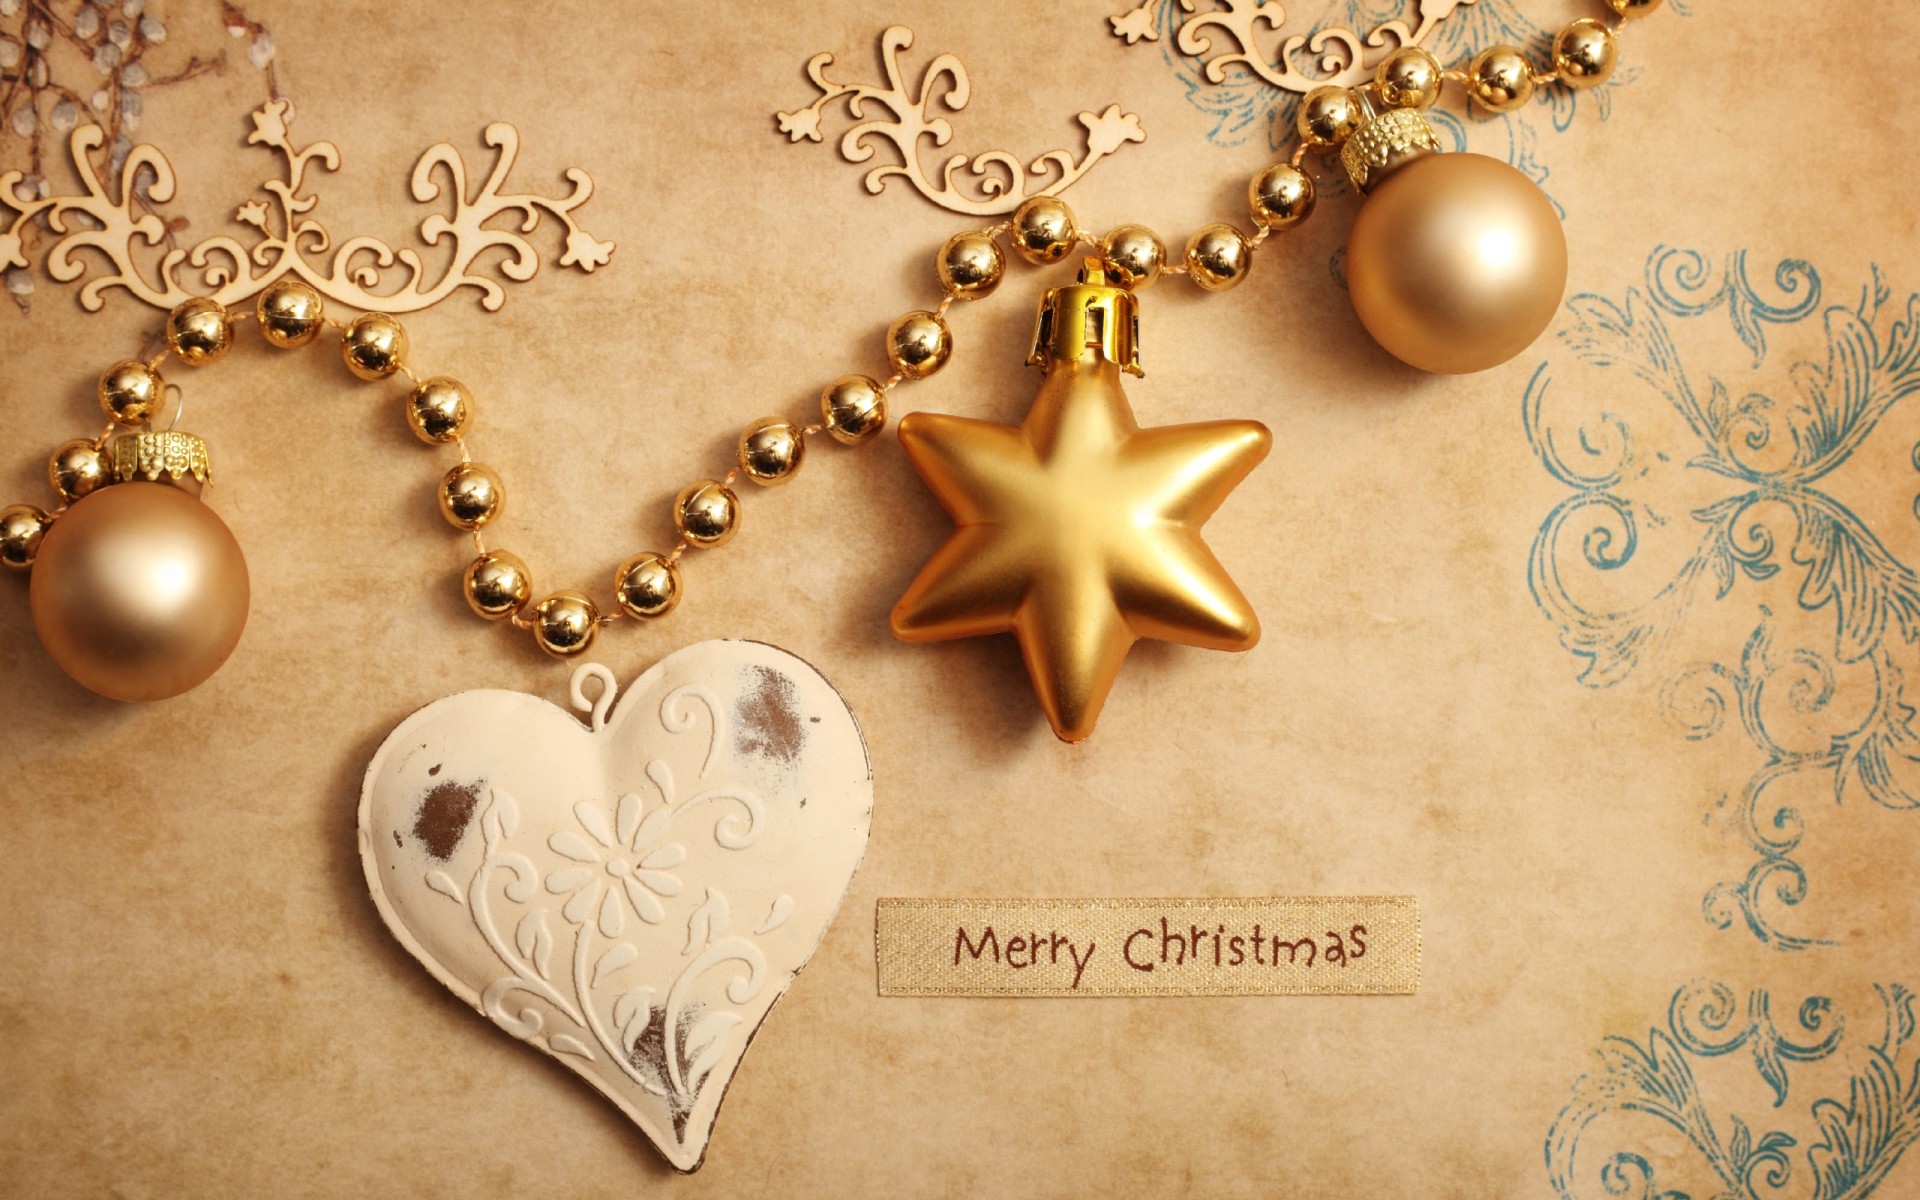 рождество золото ретро античная украшения светит бумага бисер ювелирные изделия шары сердце украшения